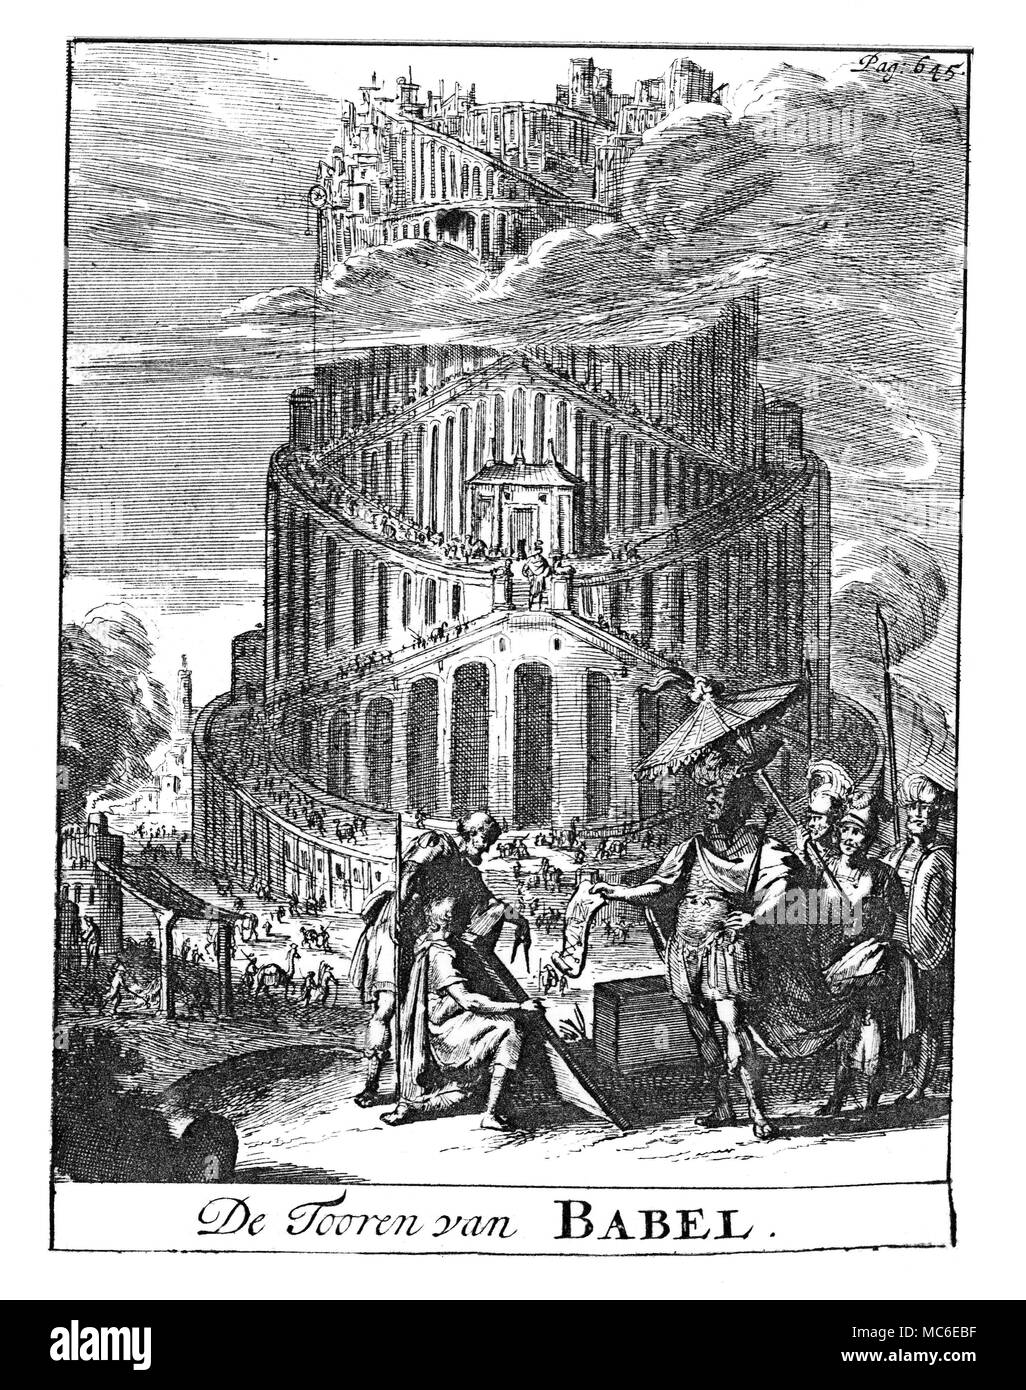 WORLD WONDERS - TOWER OF BABEL The tower of Babel, reaching even higher than the clouds. from Het Groot Natuur- en Zedekundigh Werelttoneel of Woordenboek, 1743. Stock Photo